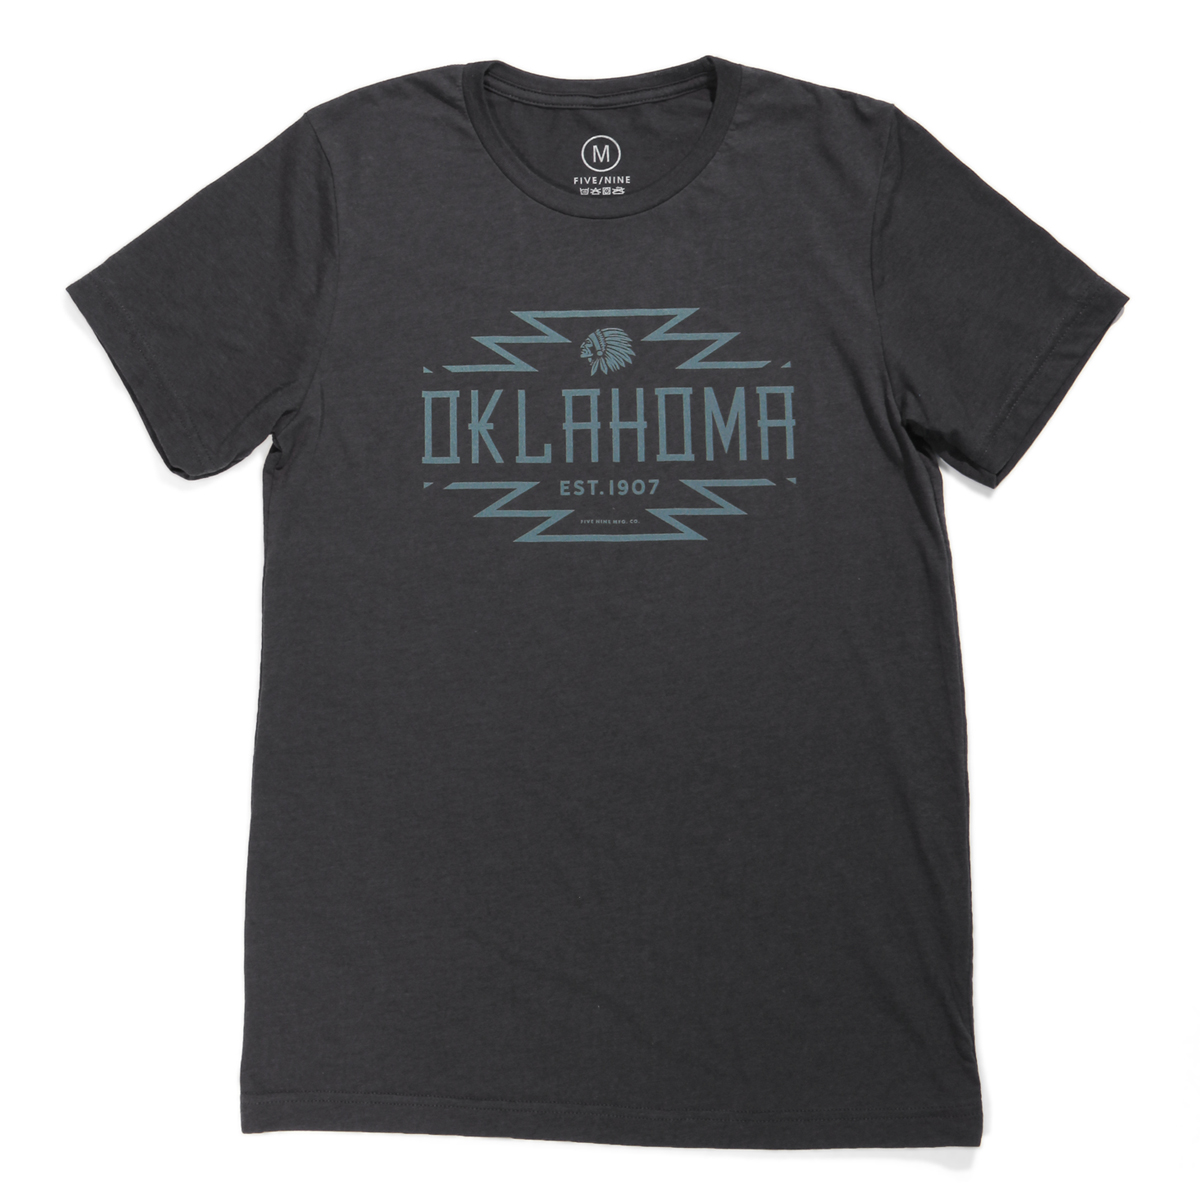 Native Oklahoma T-shirt